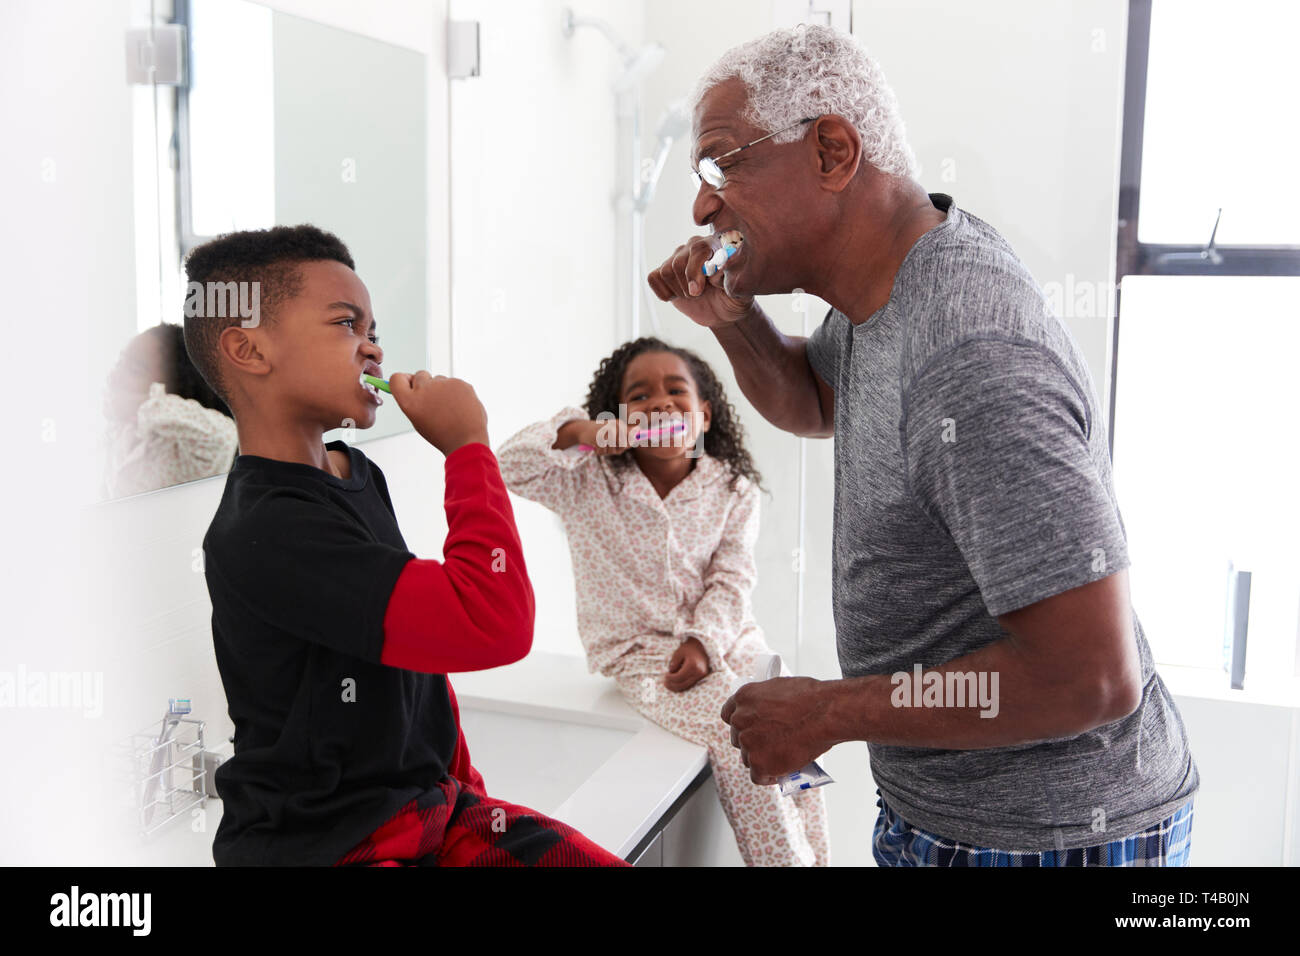 El abuelo en el baño vistiendo Pijama cepillarse los dientes con los nietos Foto de stock